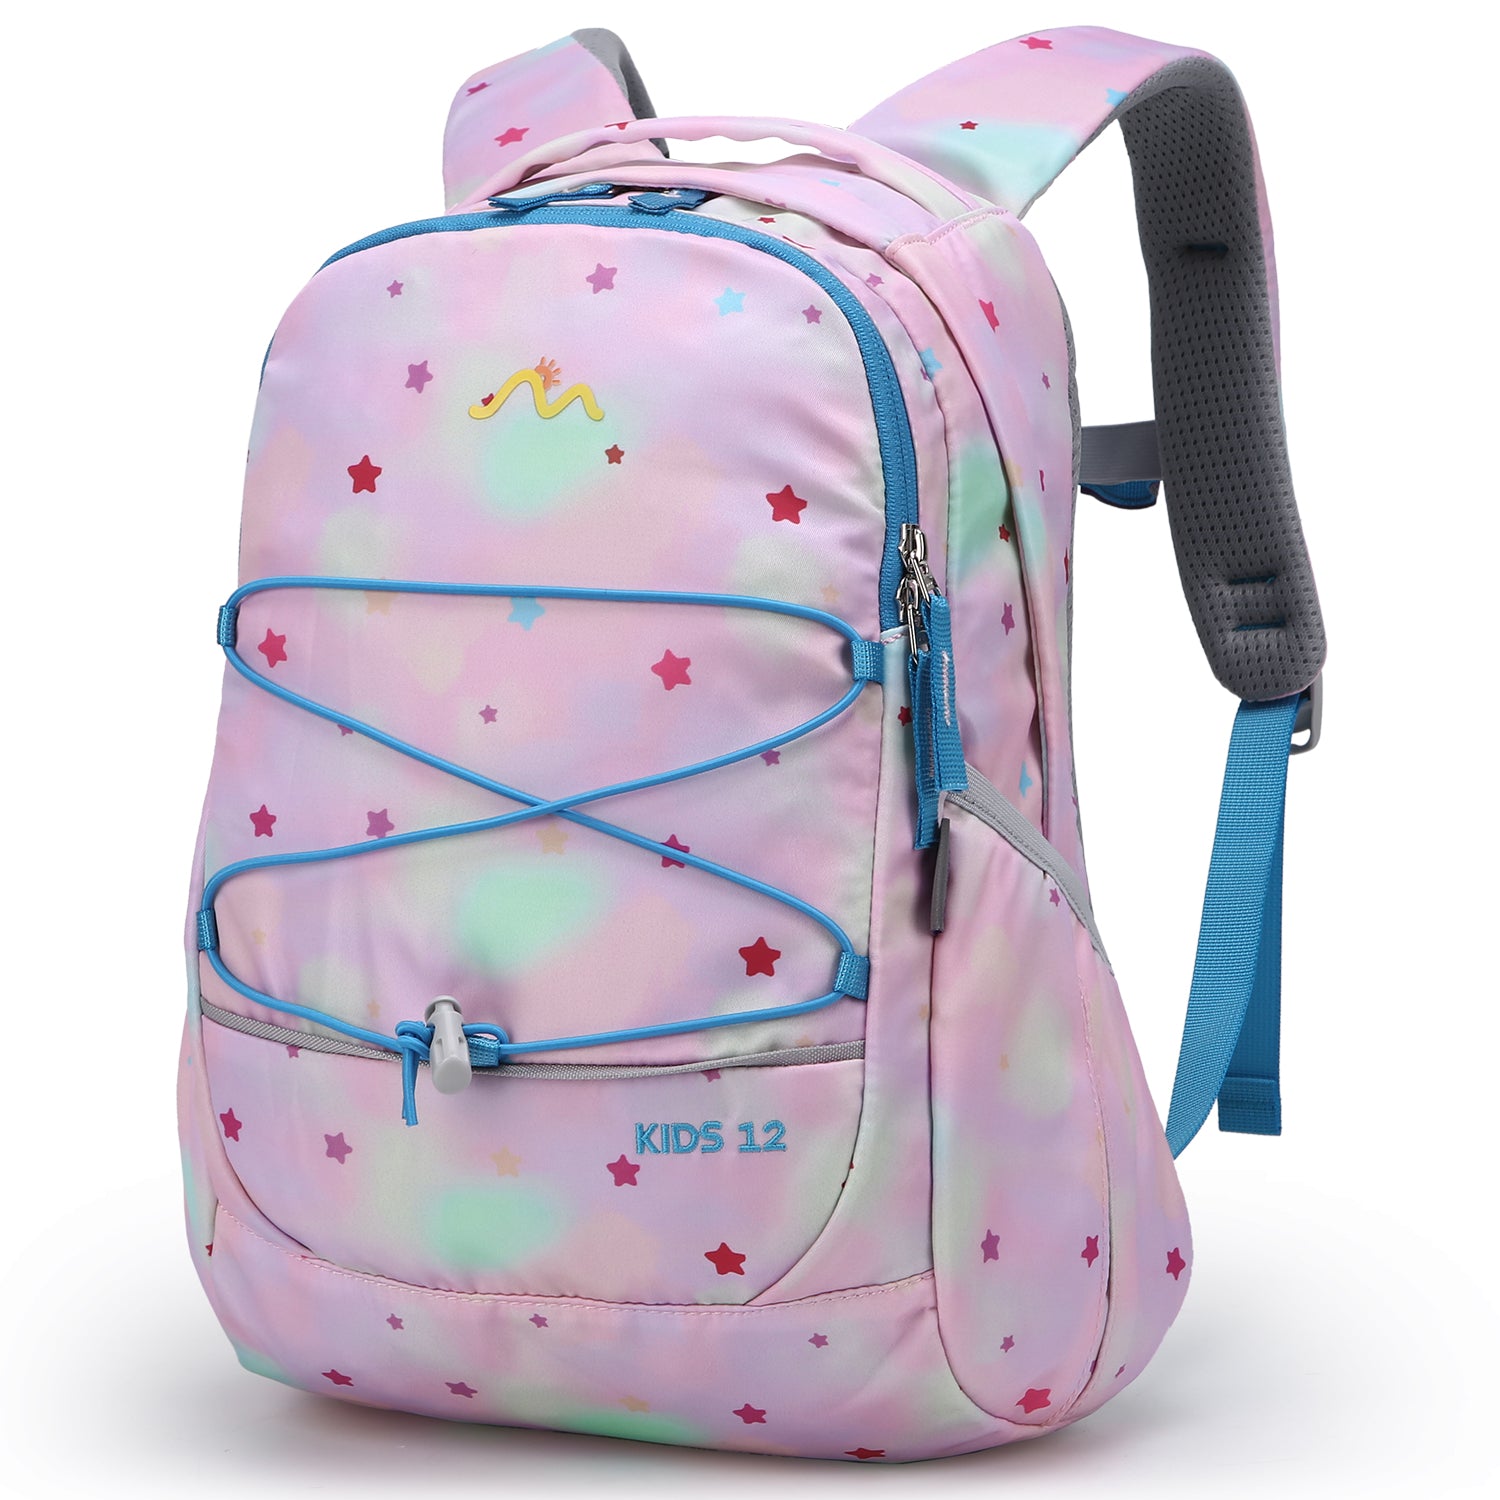 Outdoor Kid Backpacks,star backpack for girl